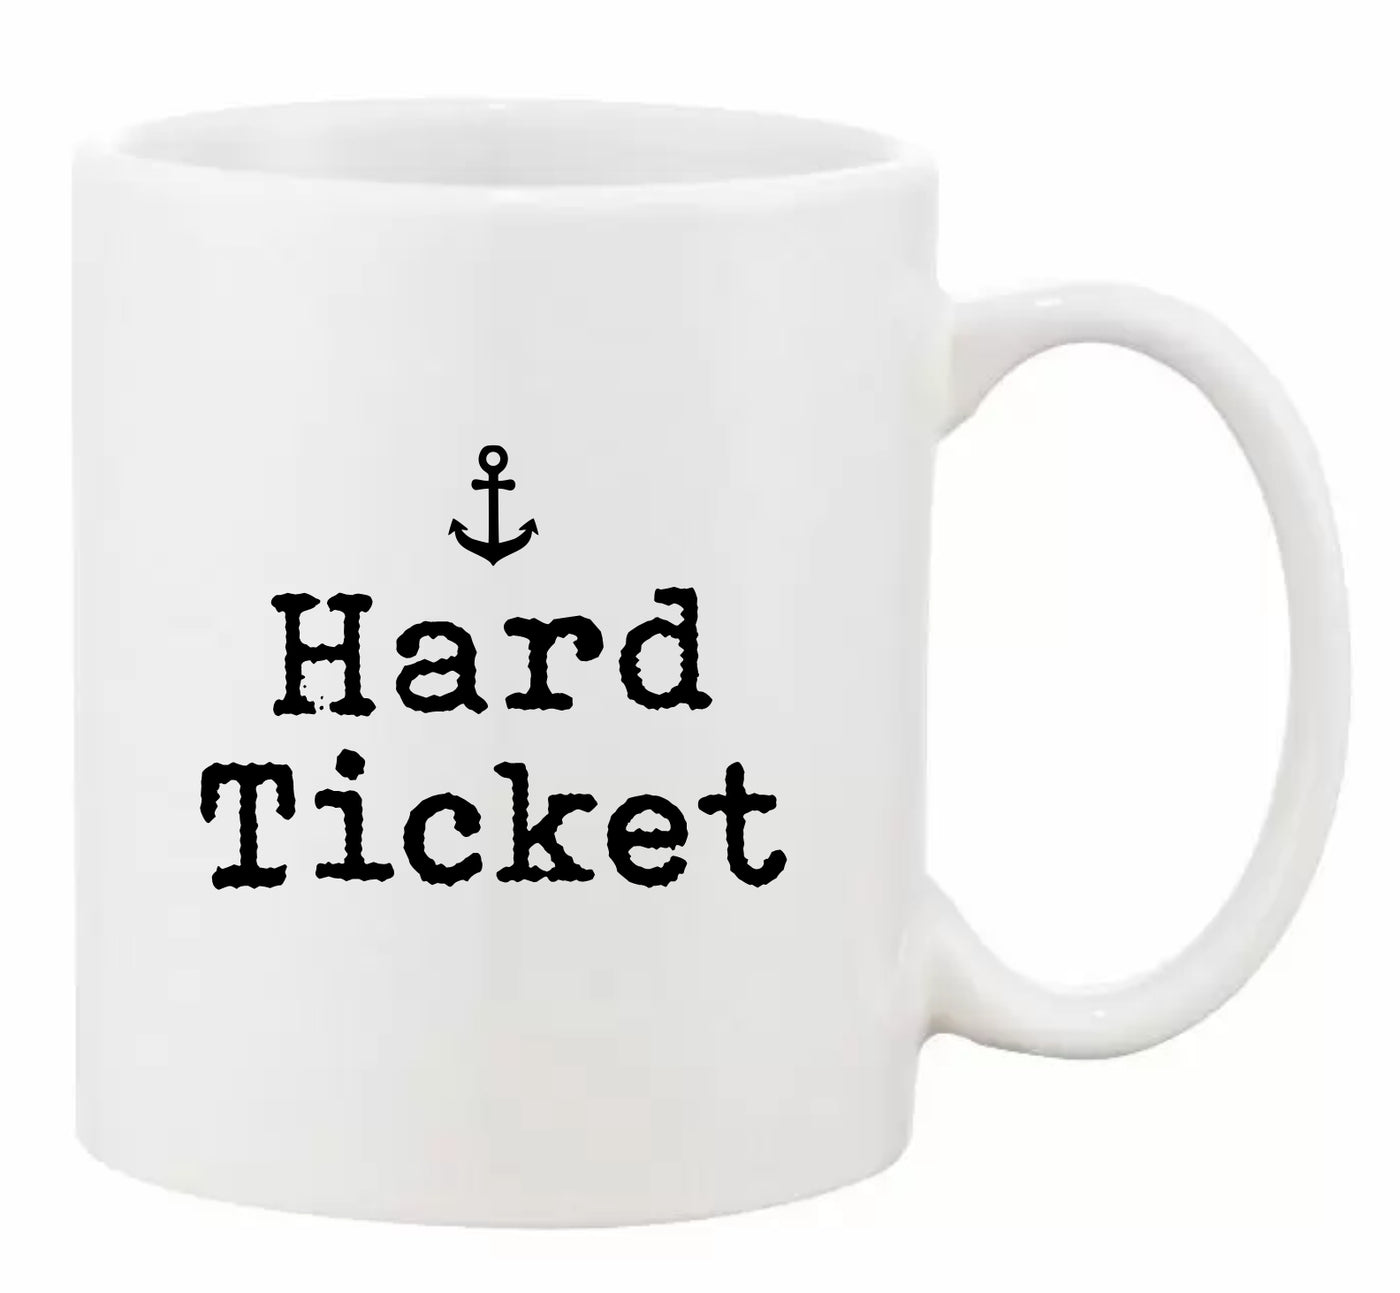 "Hard Ticket” 11oz Mug